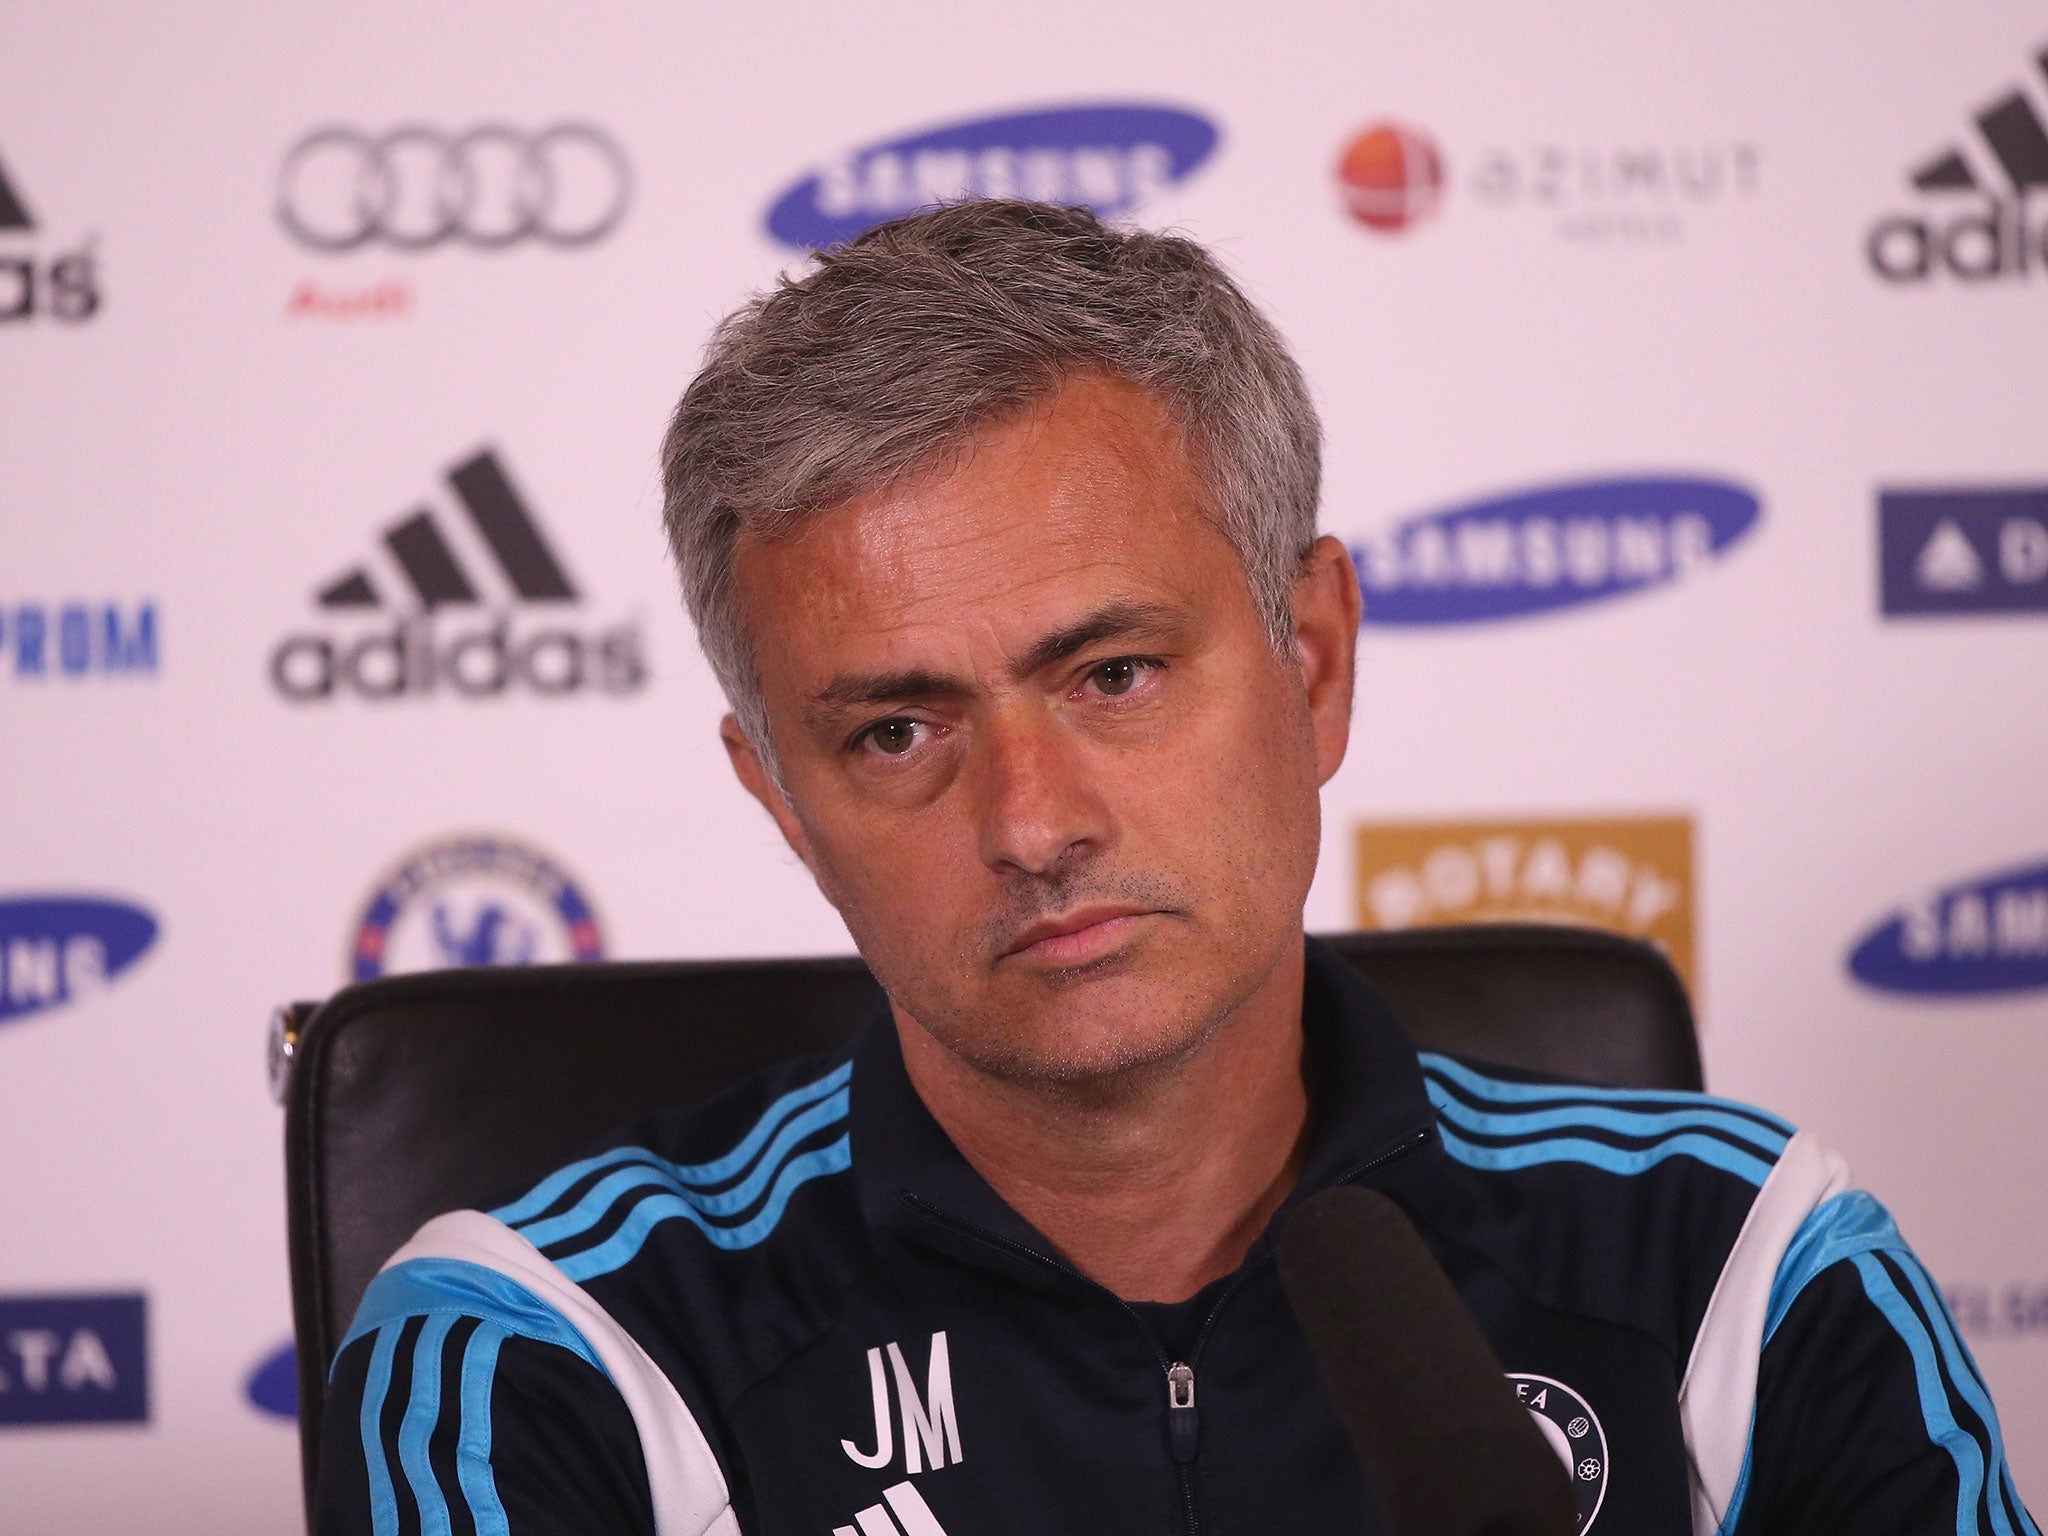 Chelsea manager Jose Mourinho backed Manchester City boss Manuel Pellegrini